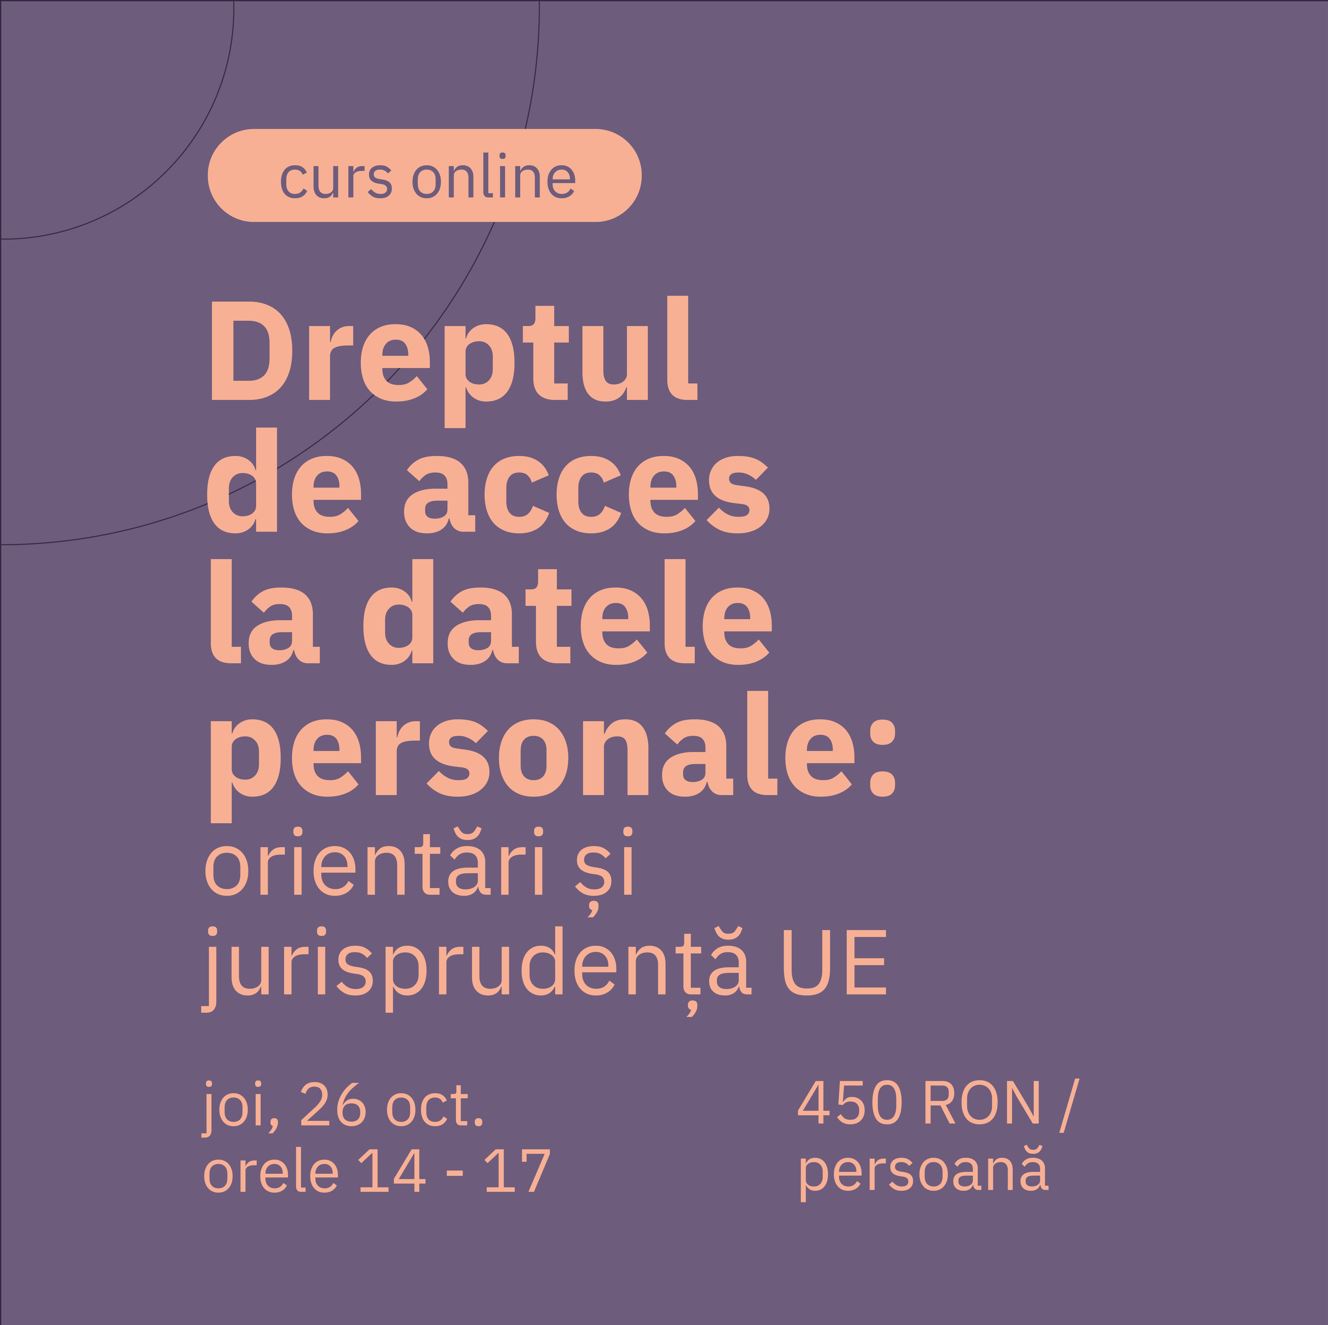 Dreptul de acces la date personale - privacylearning.ro